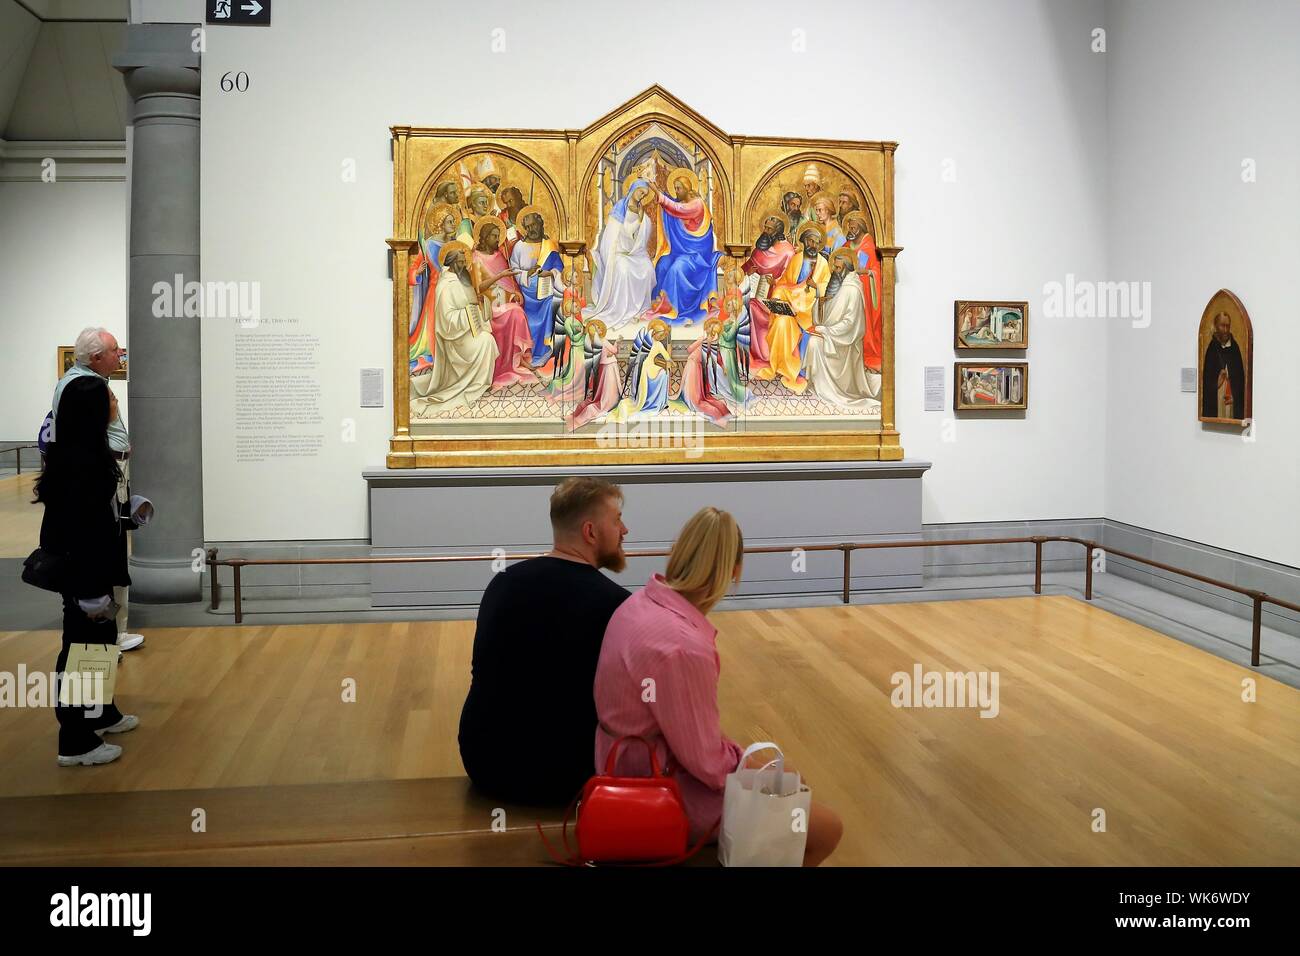 Una giovane coppia seduta in un area espositiva con un dipinto di Lorenzo Monaco nel fondo alla National Gallery, Trafalgar Square, London, Regno Unito Foto Stock